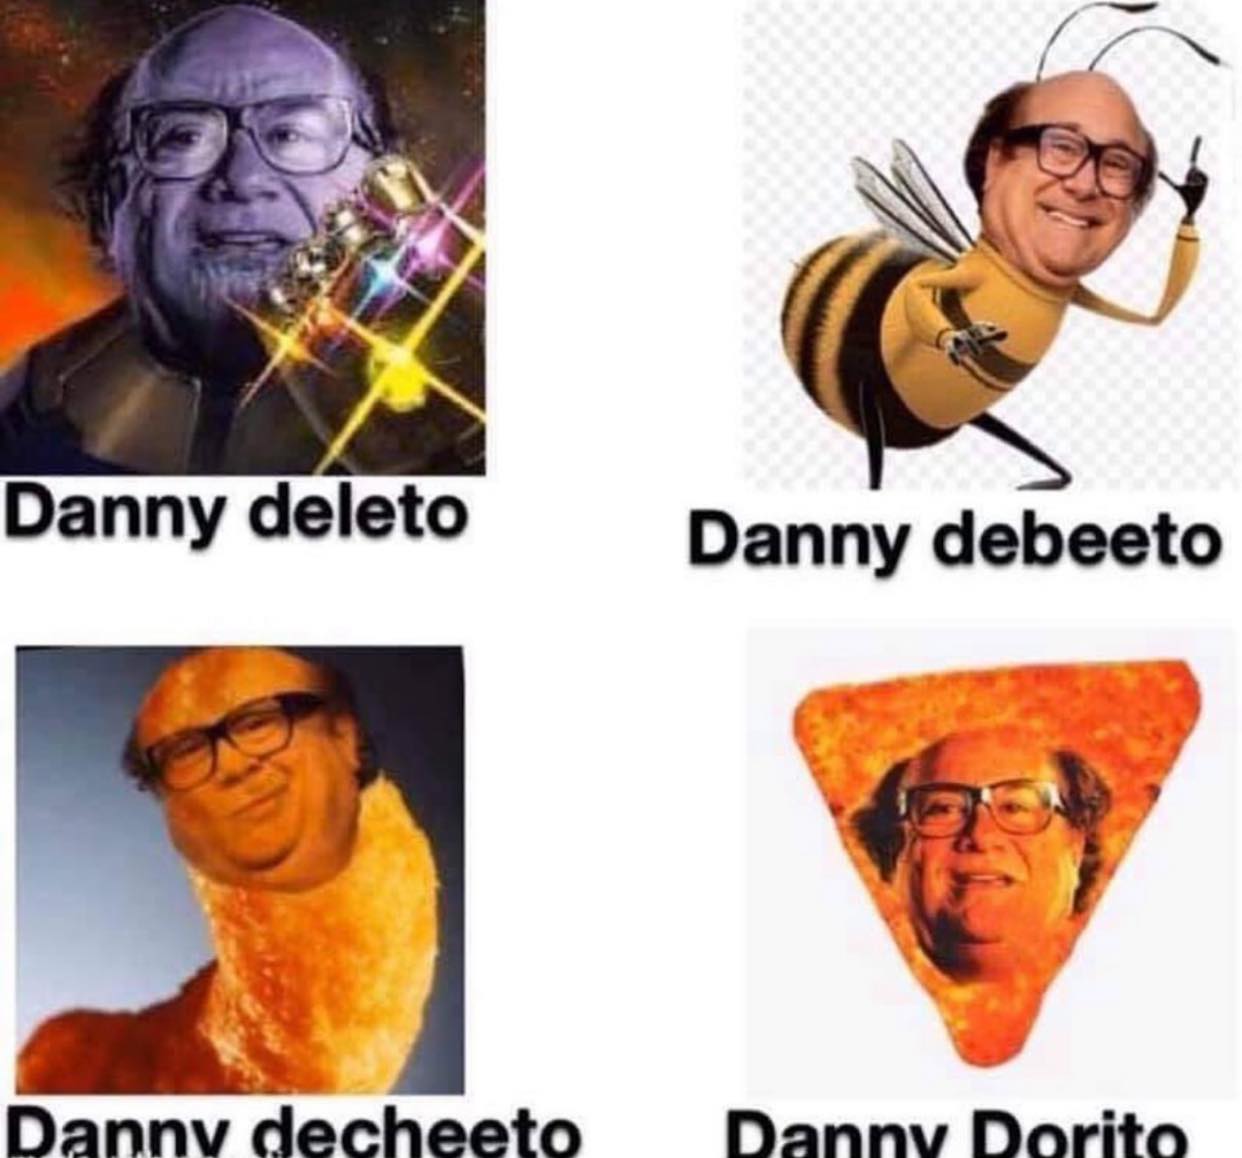 album cover - Danny deleto Danny debeeto Danny decheeto Danny Dorito